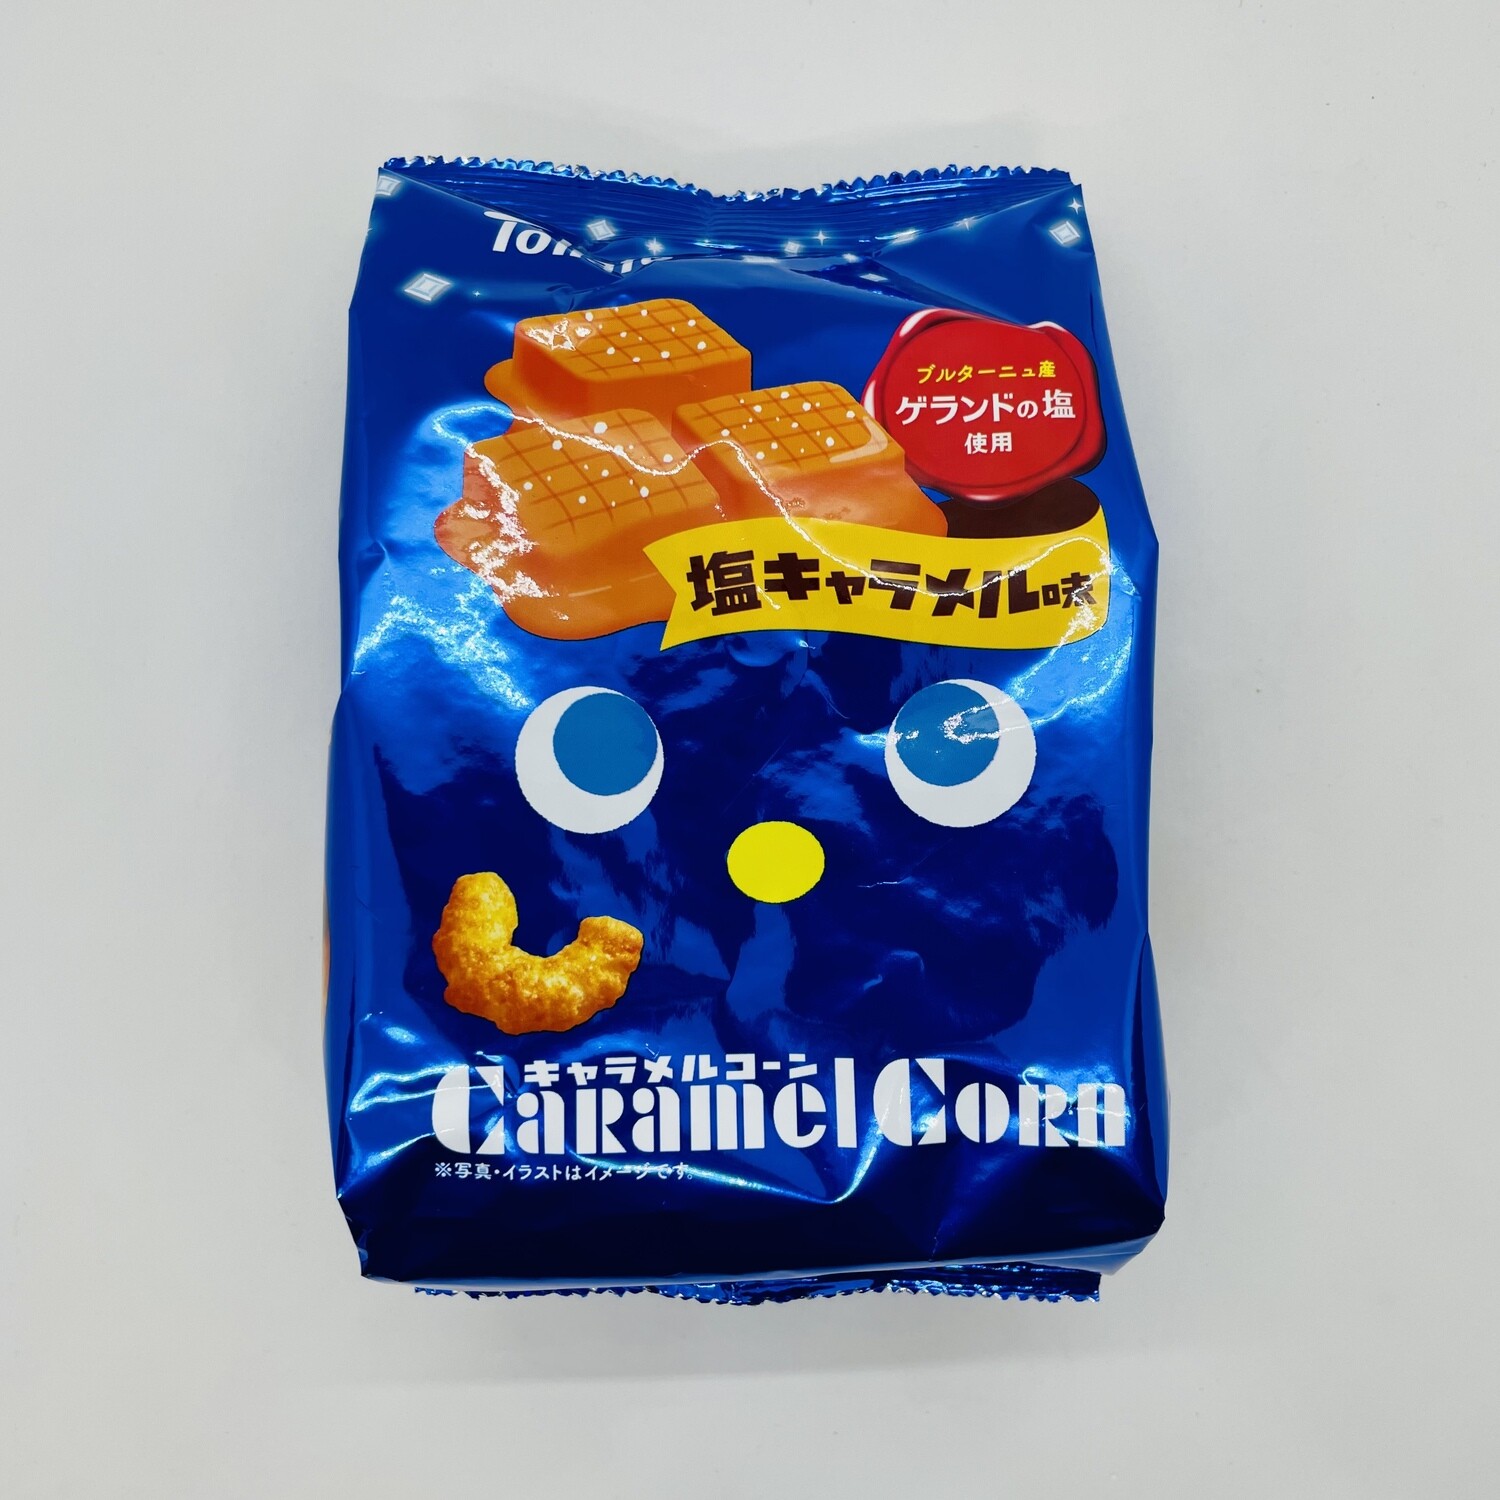 Caramel Corn Shio Caramel